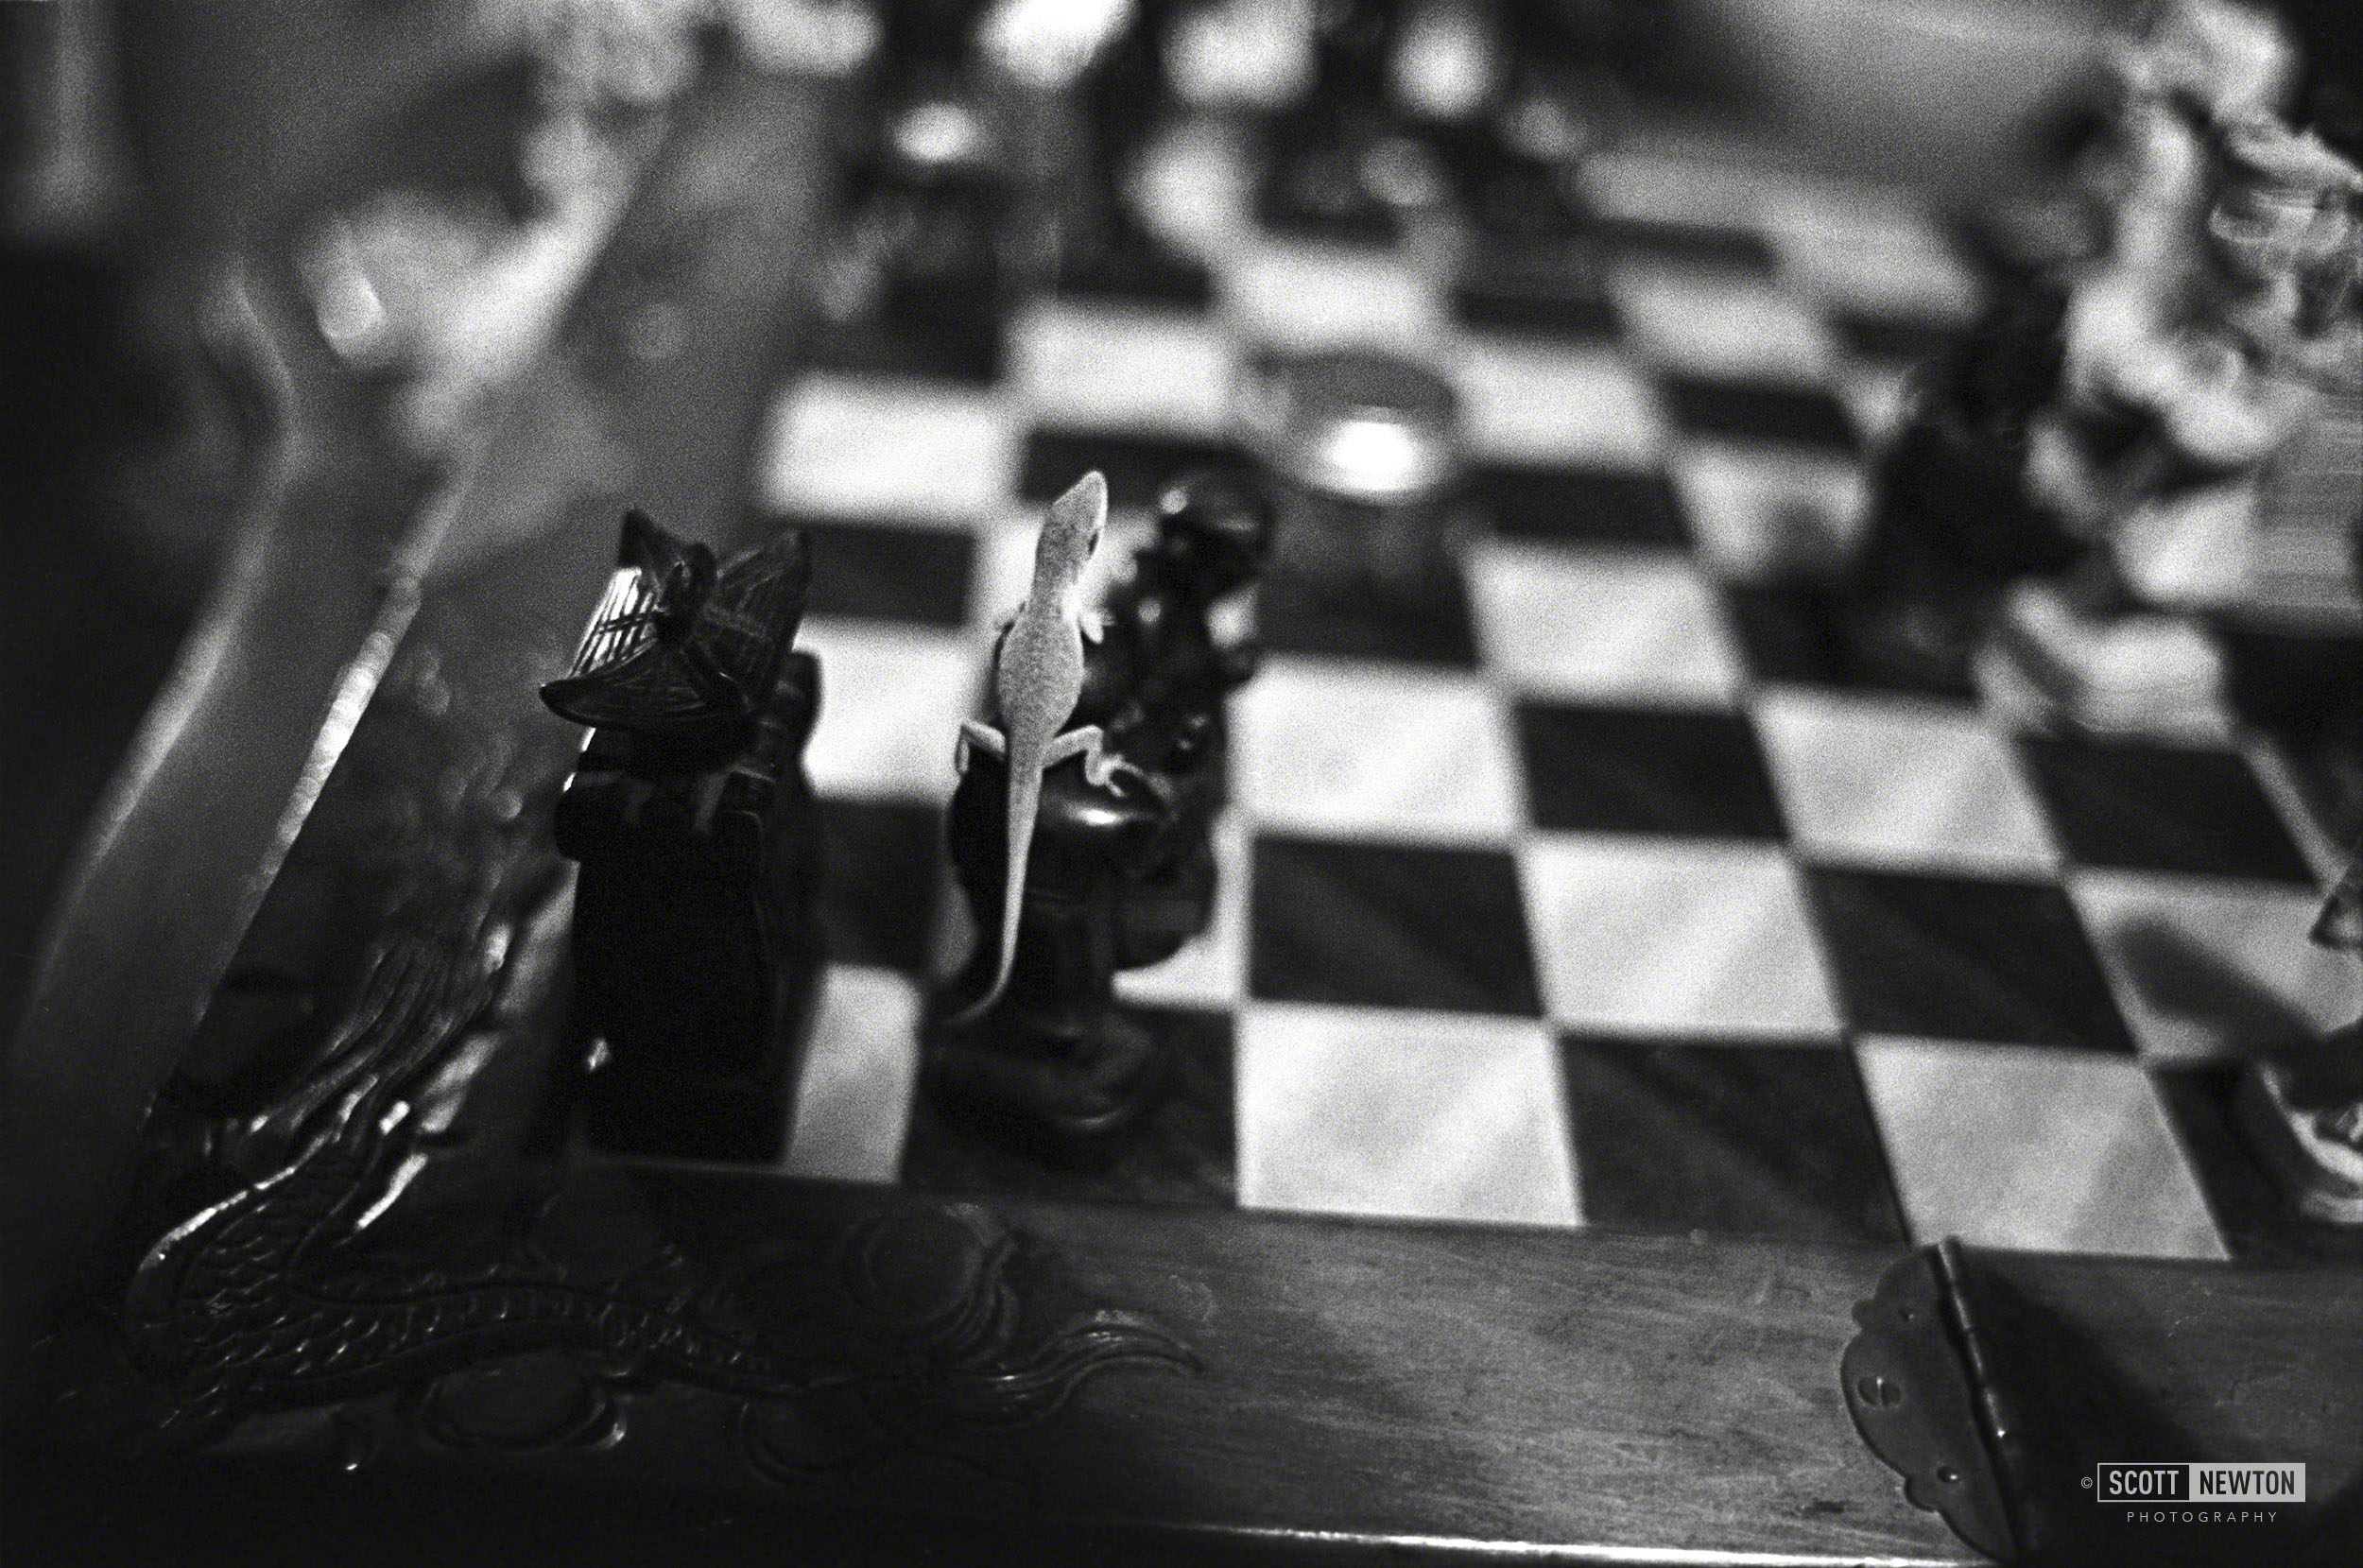 Lizard Chess 1977